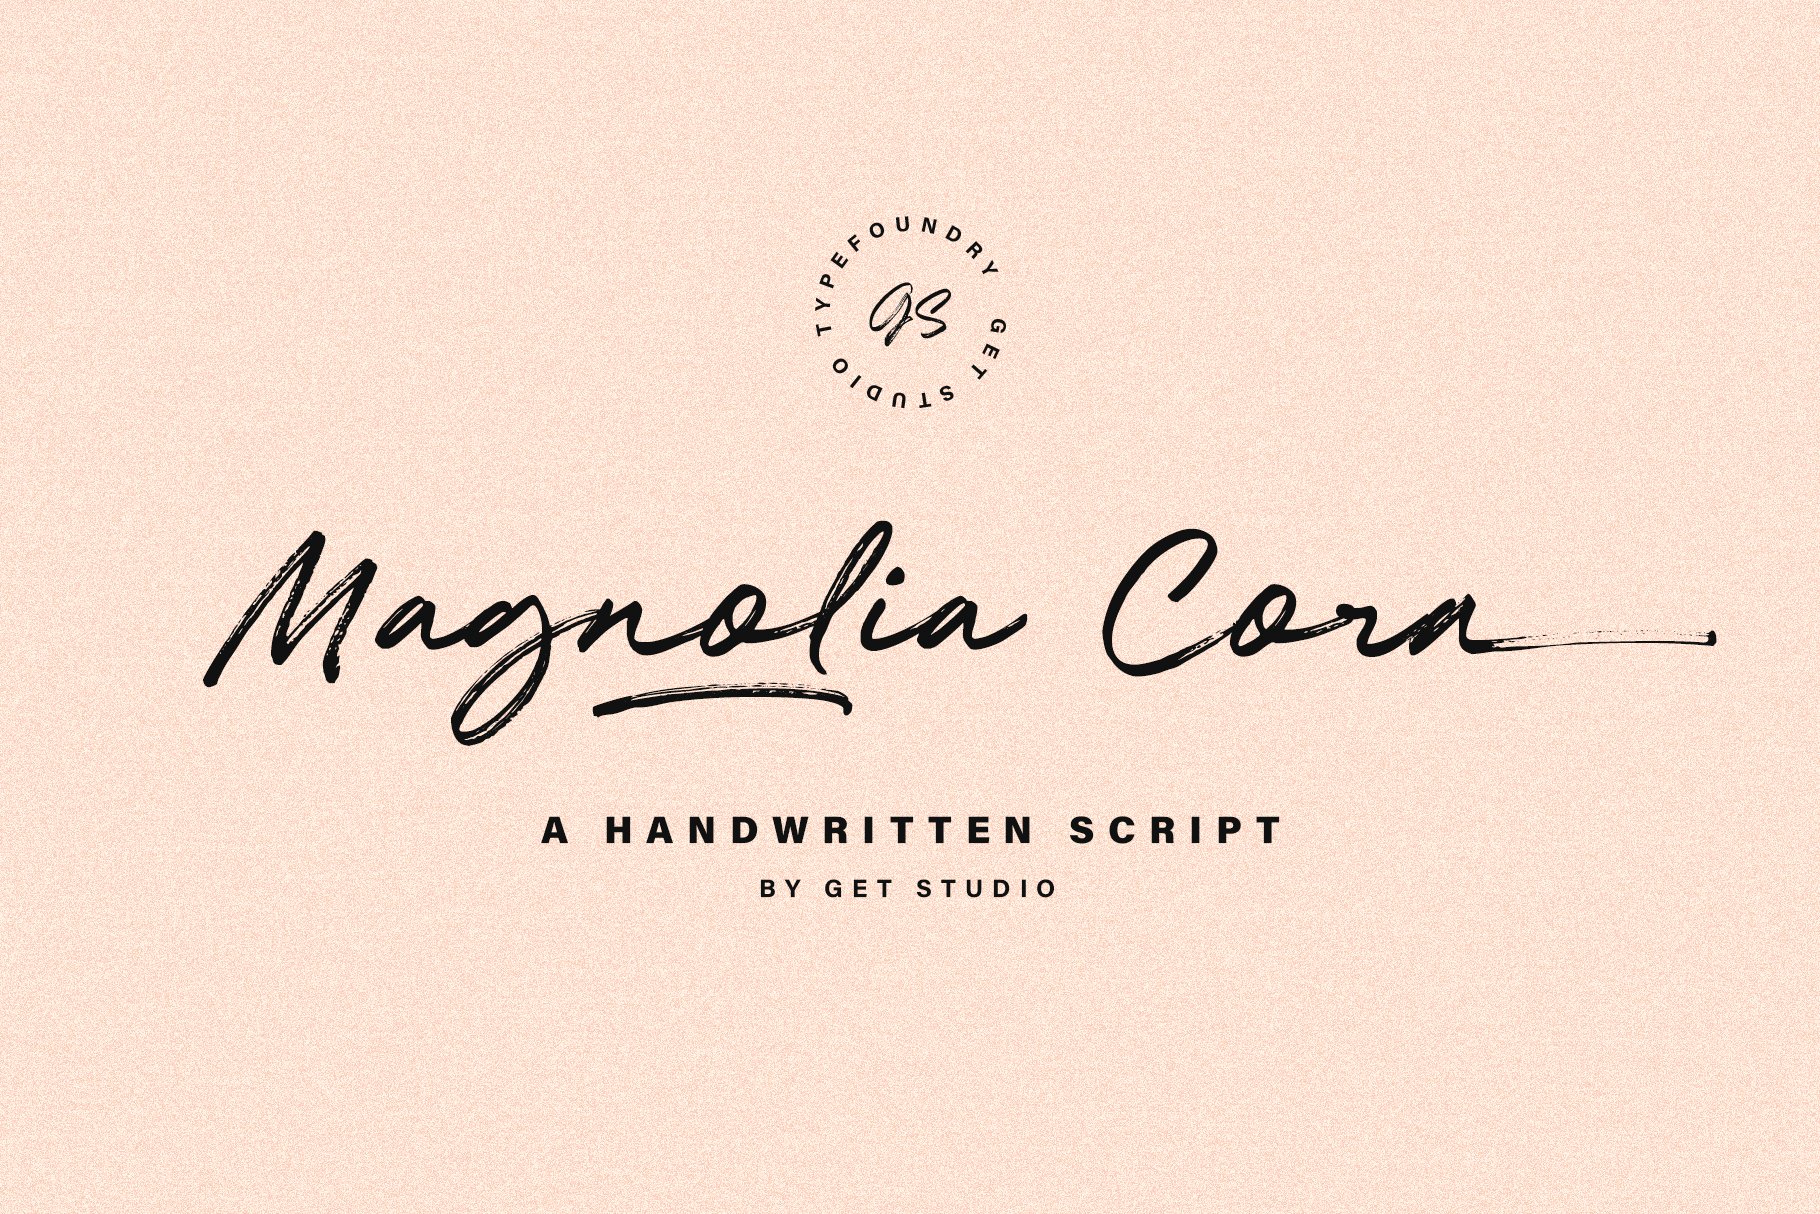 Magnolia Cora Scriptcover image.